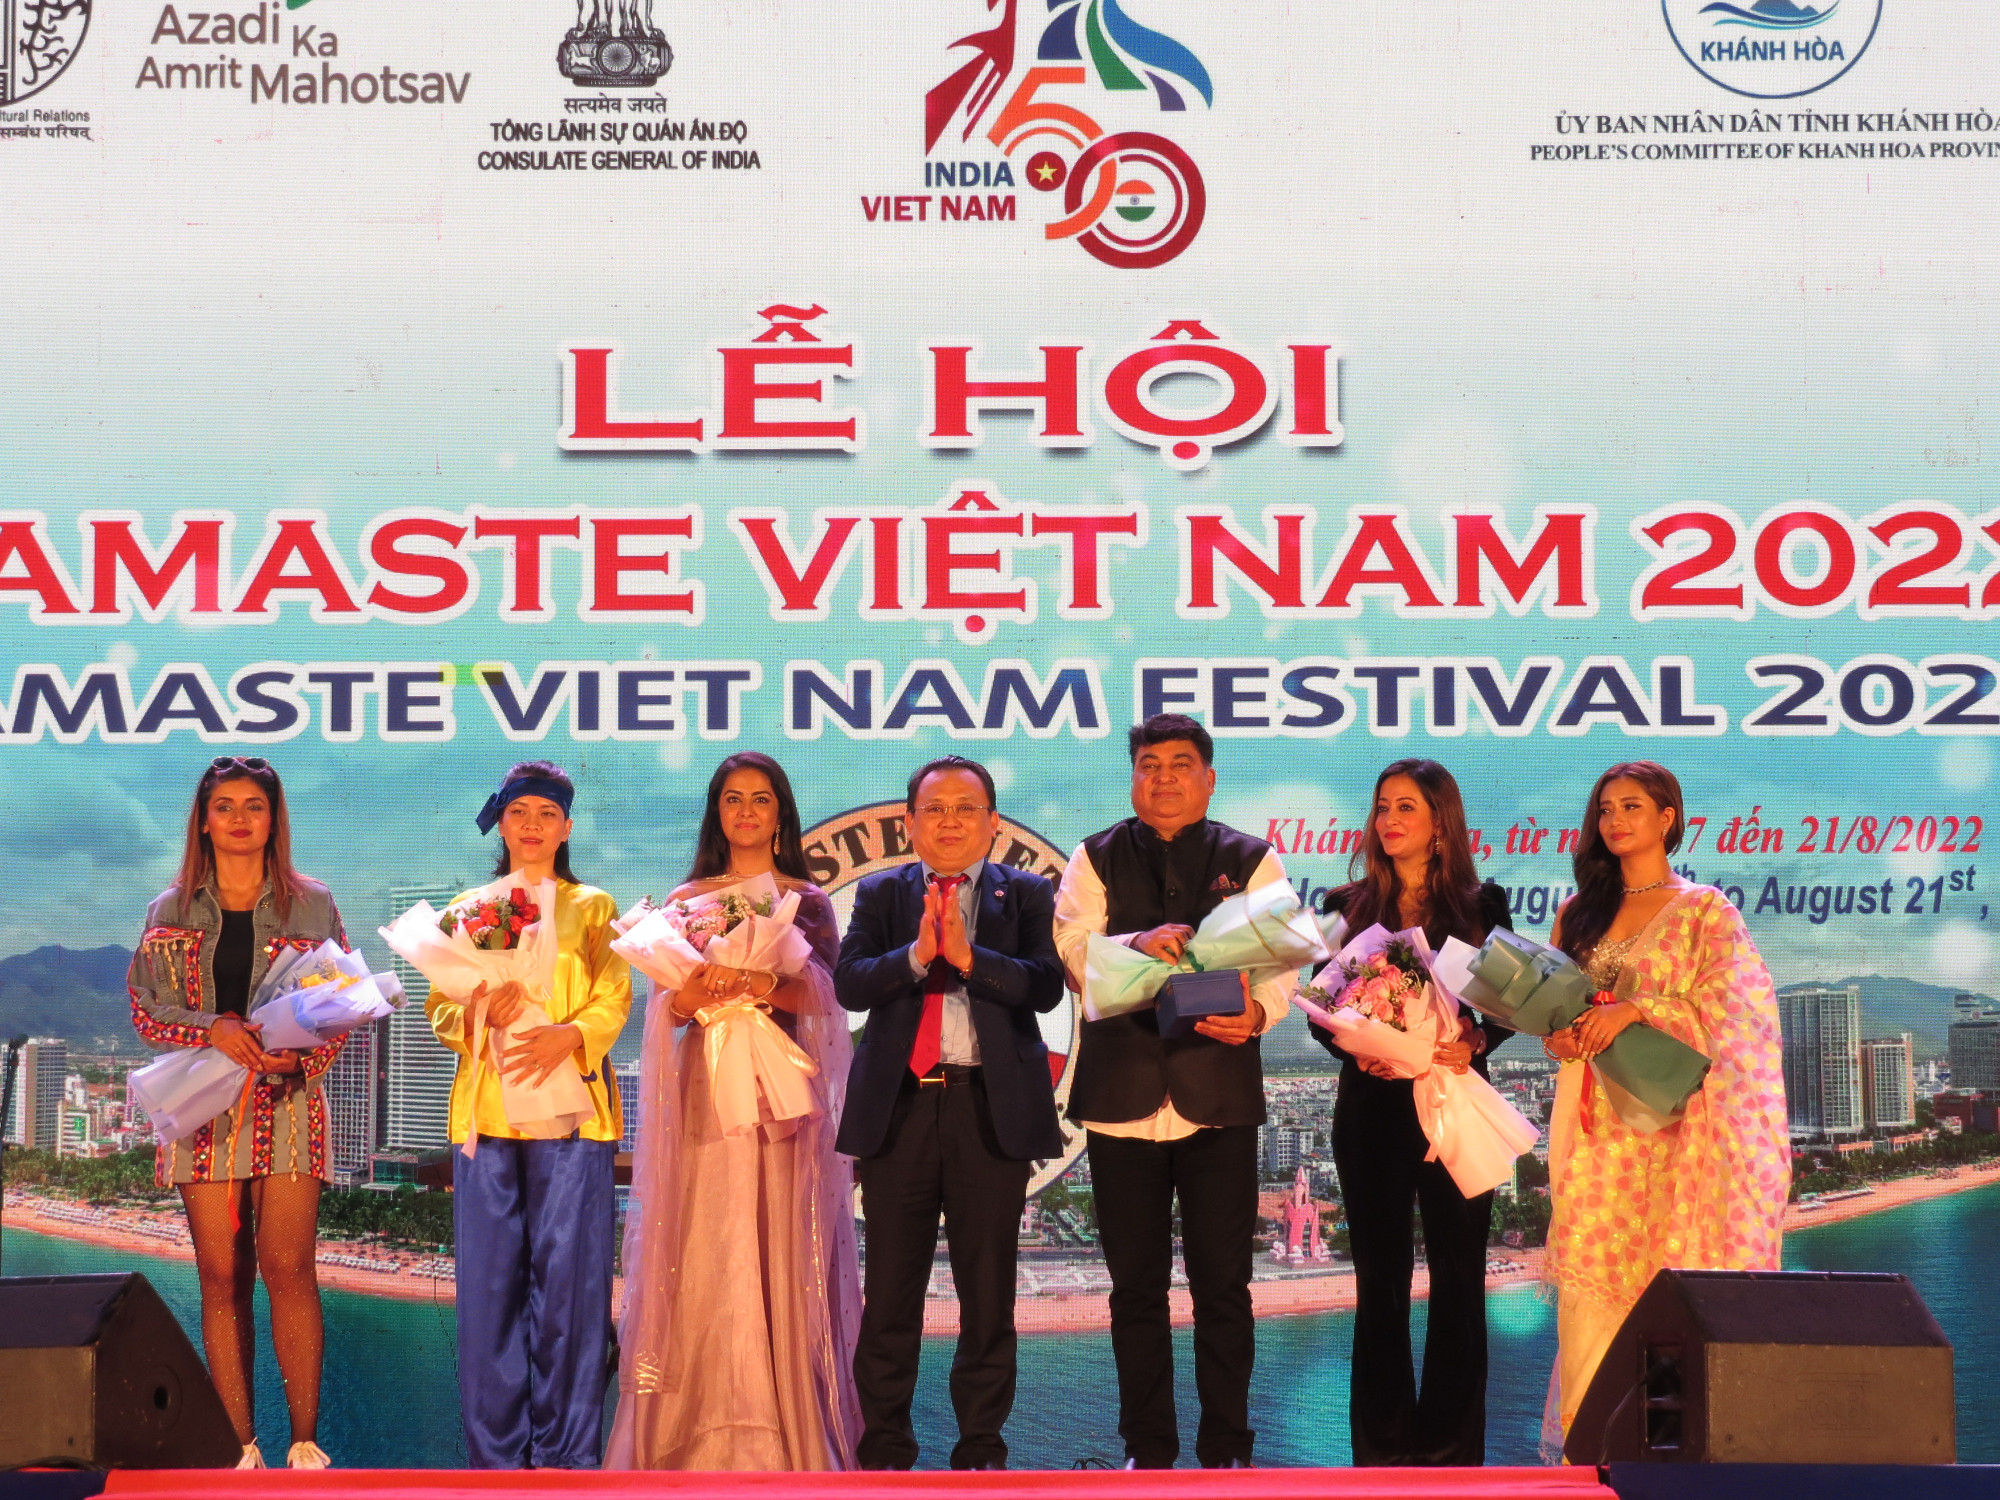 Lãnh đạo tỉnh Khánh Hòa tặng hoa cảm ơn 2 đoàn nghệ thuật